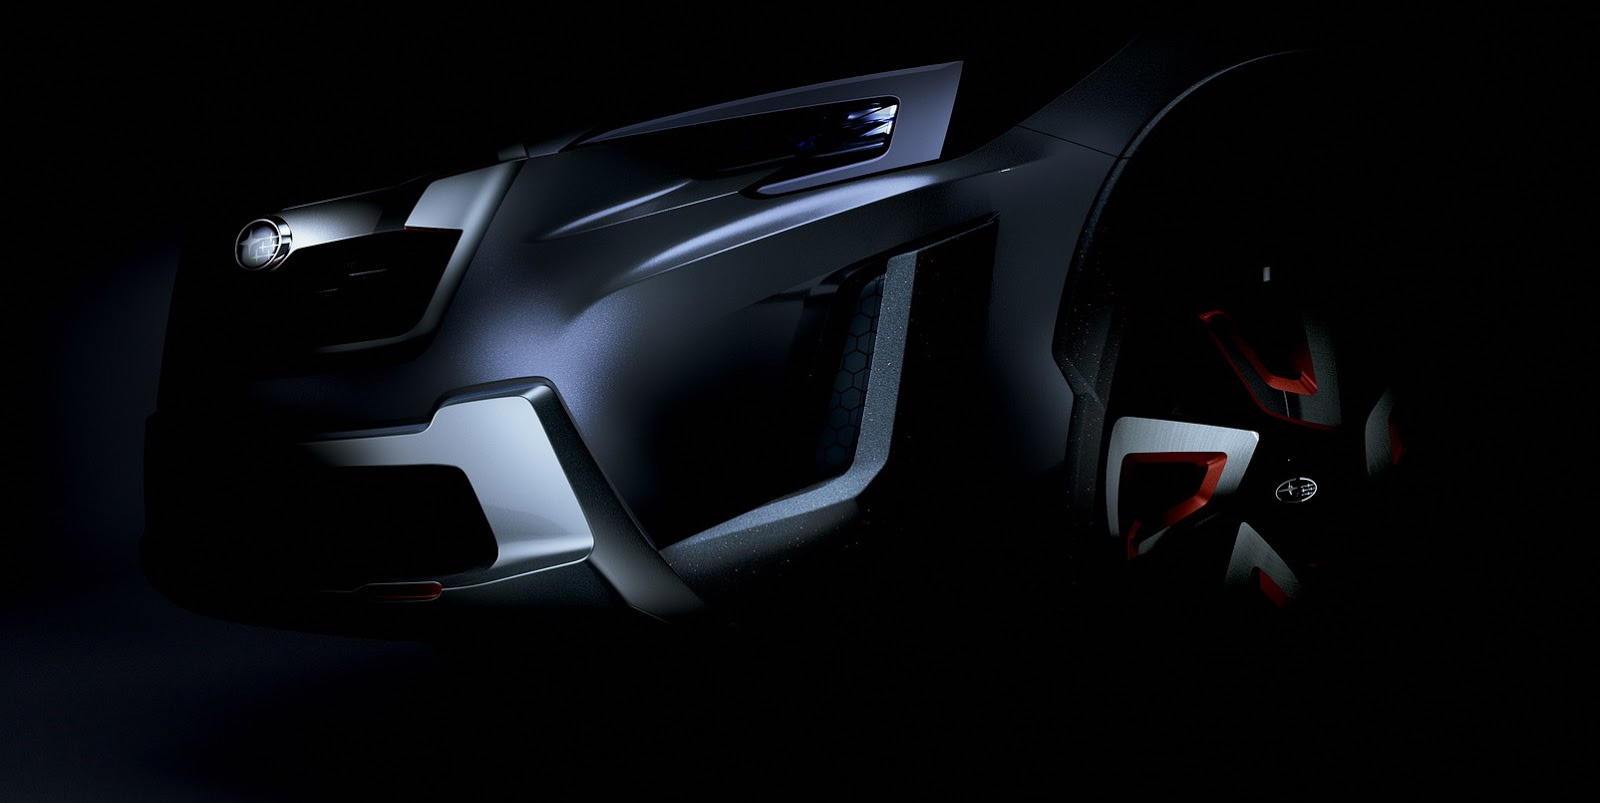 Berita, subaru xv concept teaser: Konsep Subaru XV Tebaru Segera Muncul di Geneva Motor Show